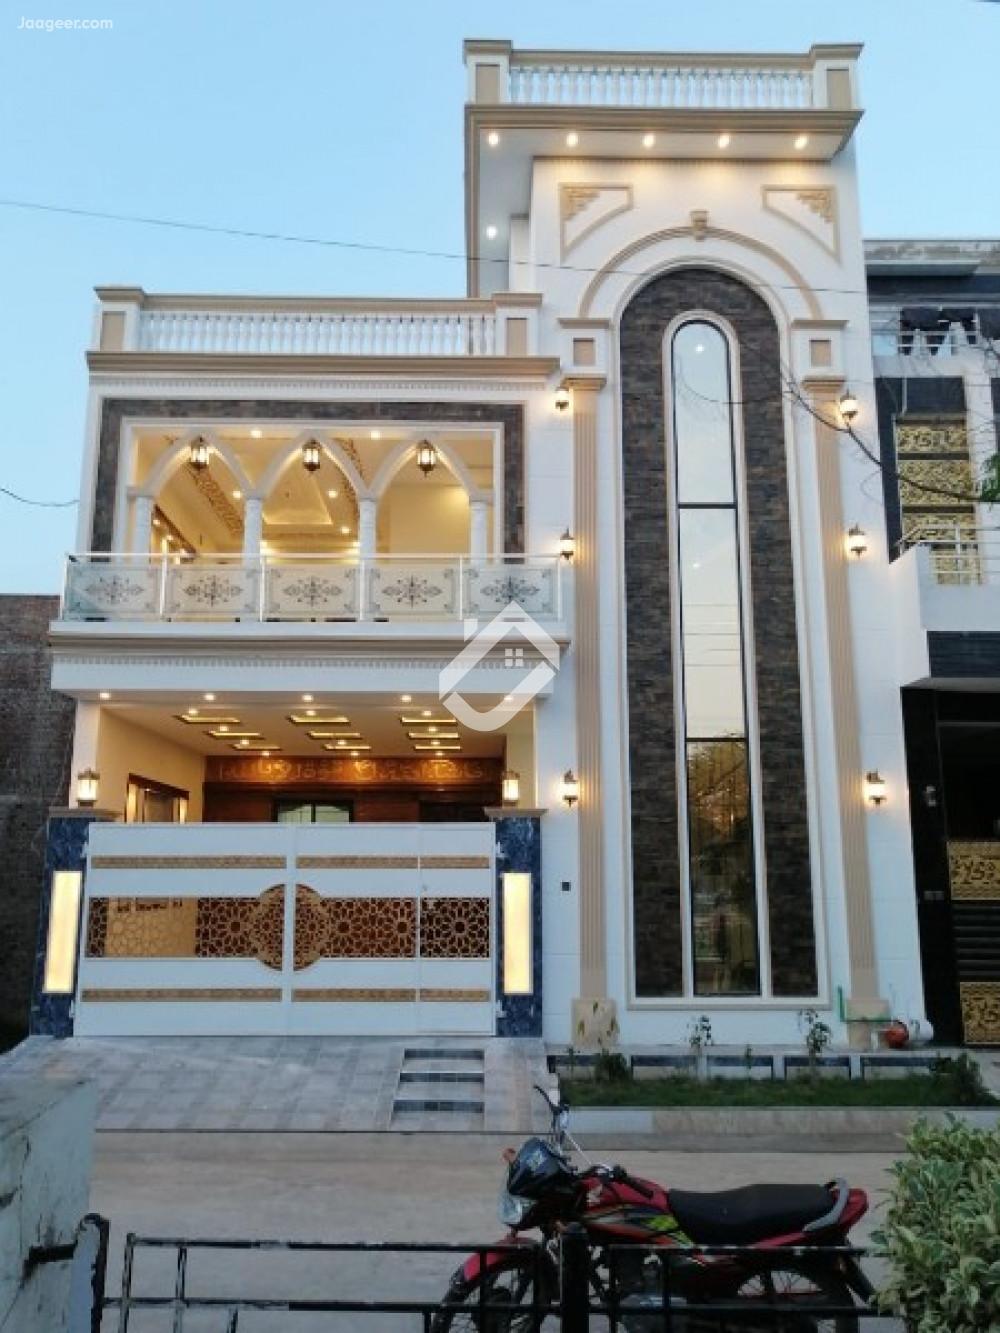 Main image 5 Marla House For Sale At Faisalabad Road Kheban E Naveed